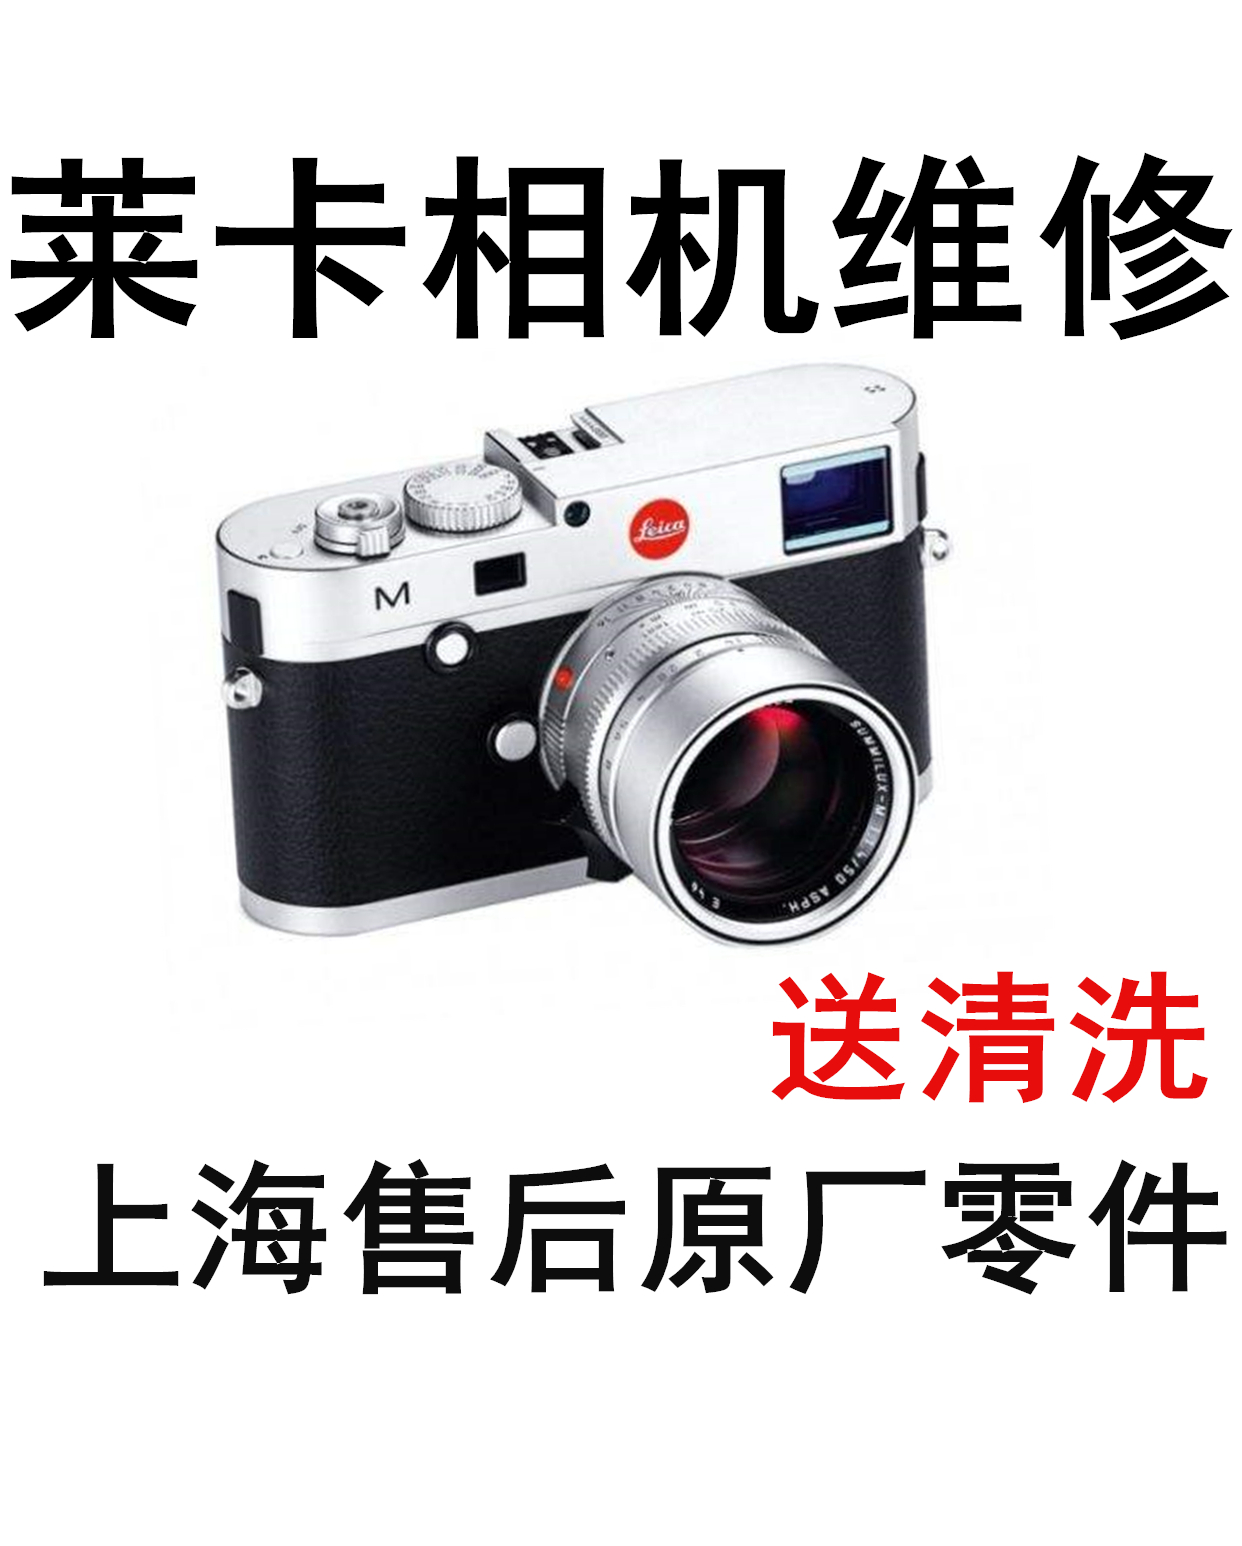 Leica/徕卡M10 Q-P TYP114 116 m20 镜头m8/m9主板屏旁轴相机维修